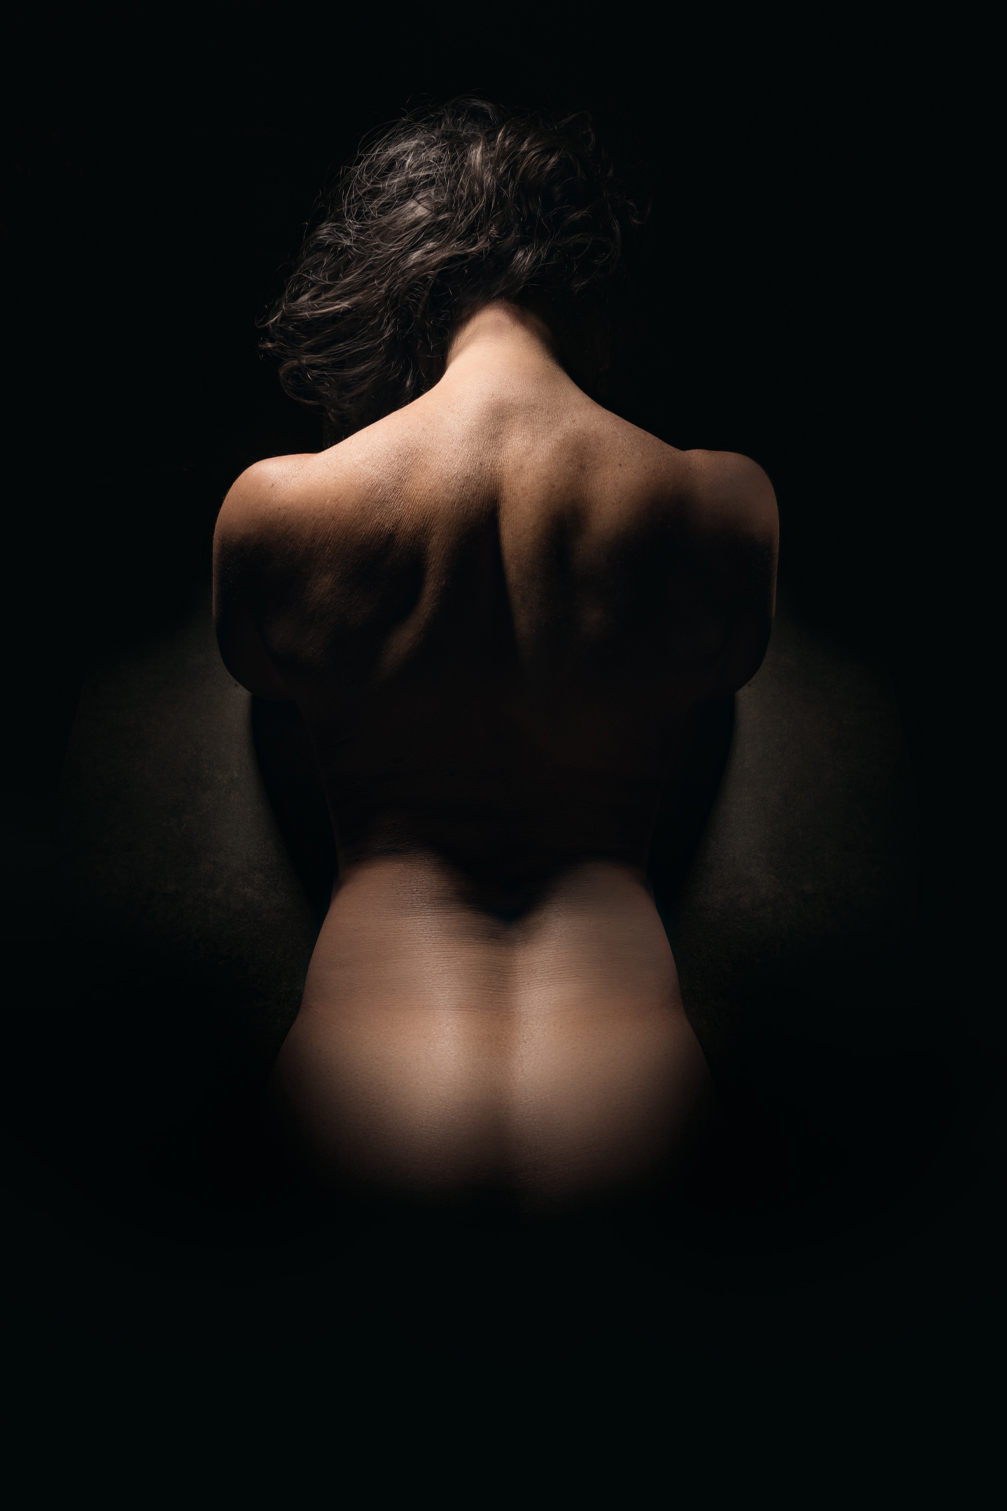 Fotografía de espaldas de mujer desnuda, entre las sombras, iluminada tenuemente resaltando sus curvas.